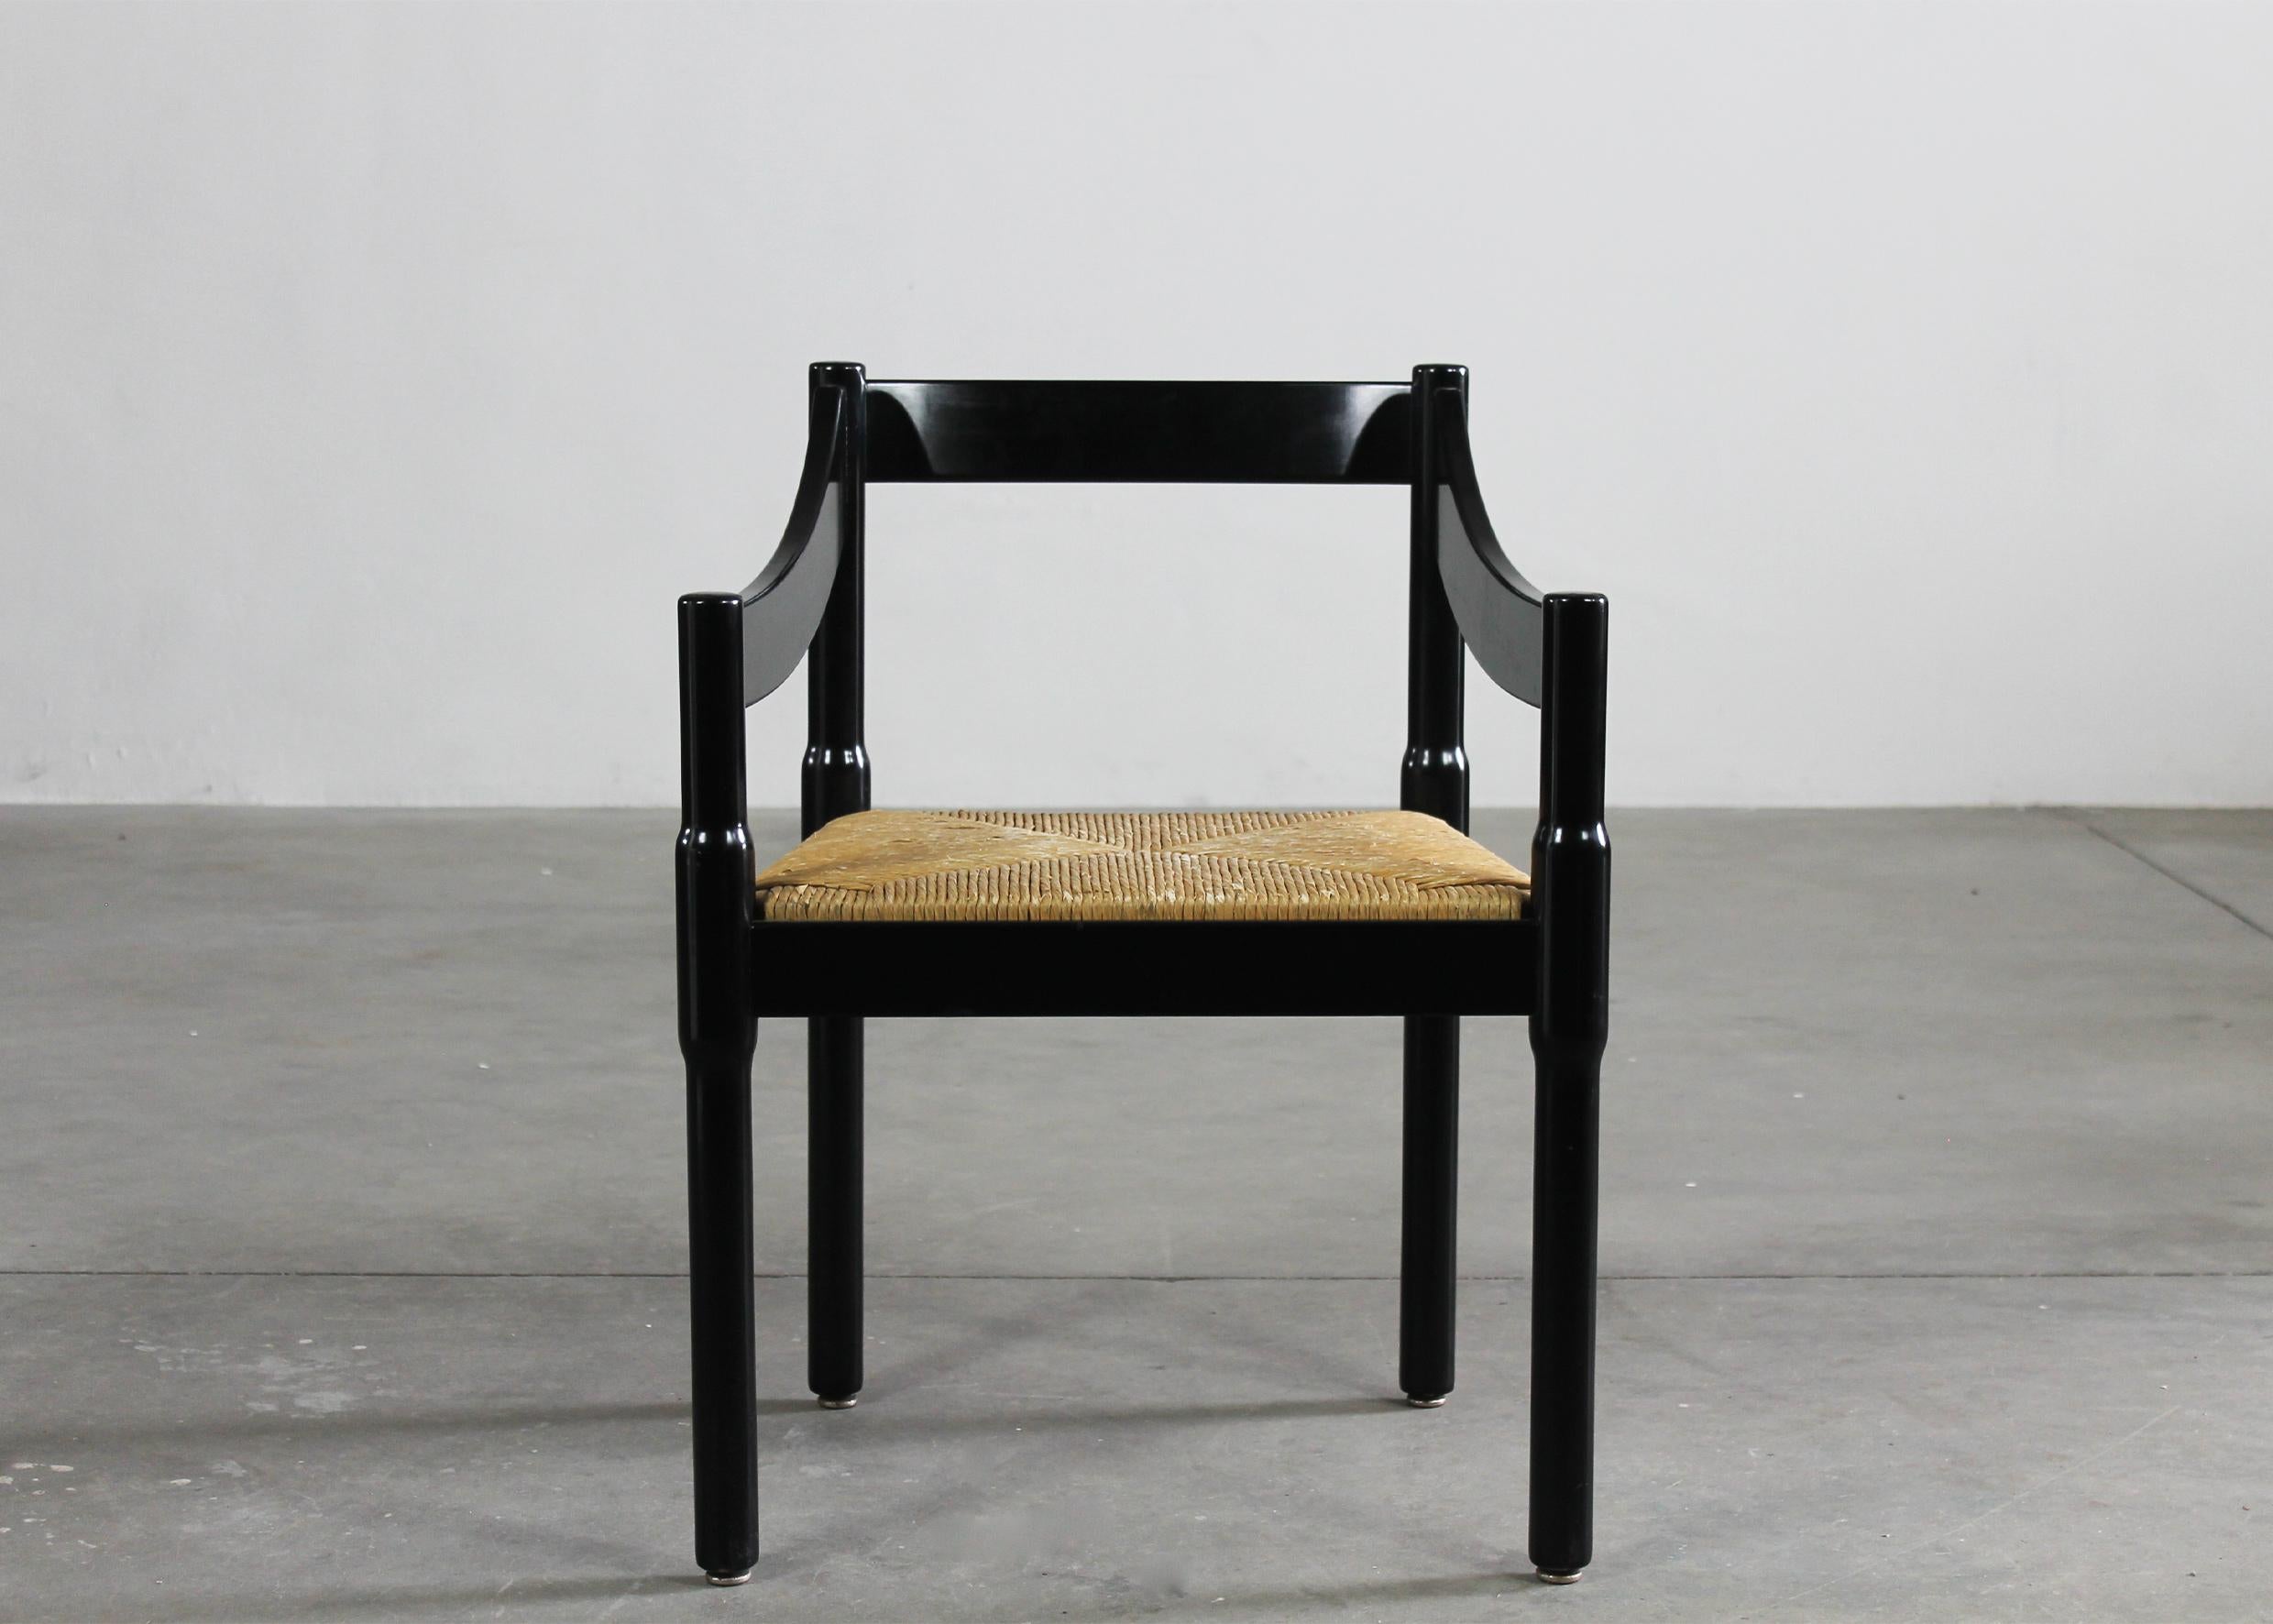 Vico Magistretti: Set aus zwölf schwarzen Carimate-Stühlen von Cassina, 1960er Jahre (Mitte des 20. Jahrhunderts)